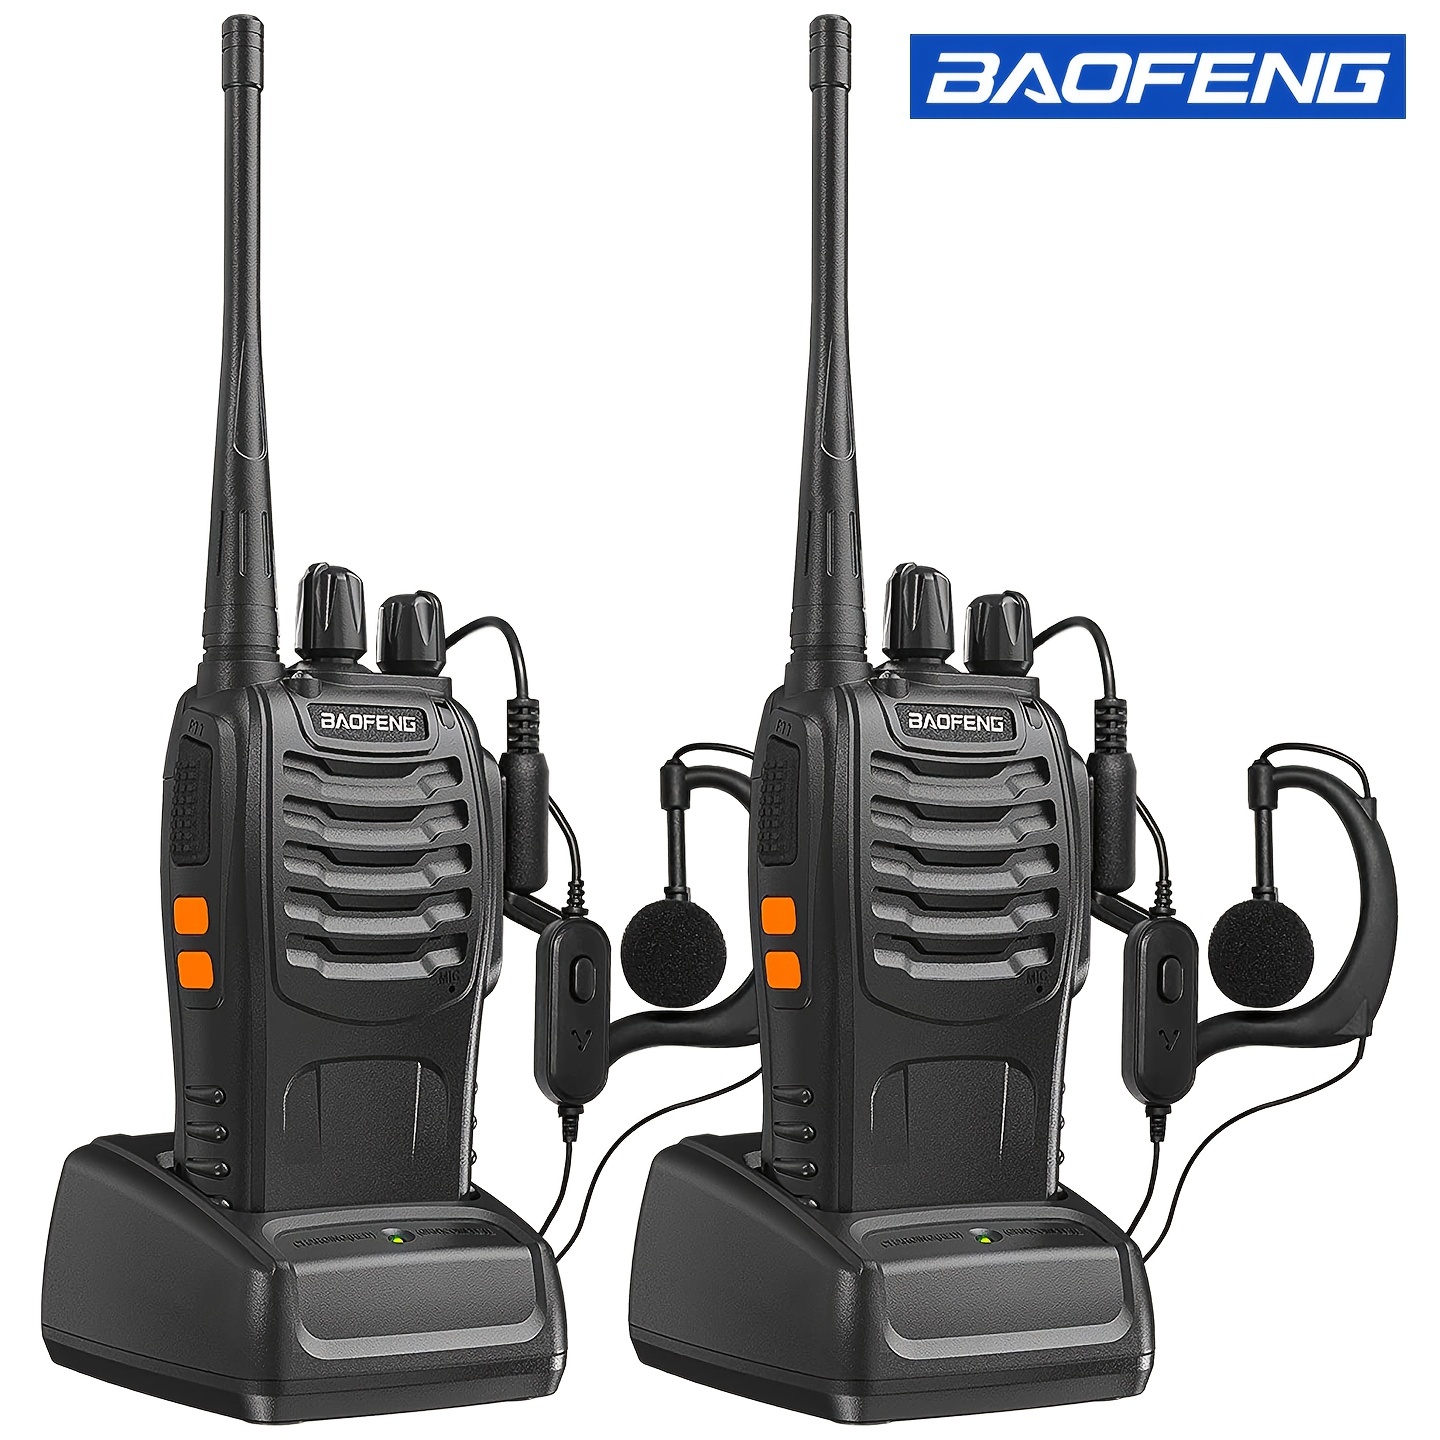 Talkie-walkie longue portée avec station de radio amateur Cb